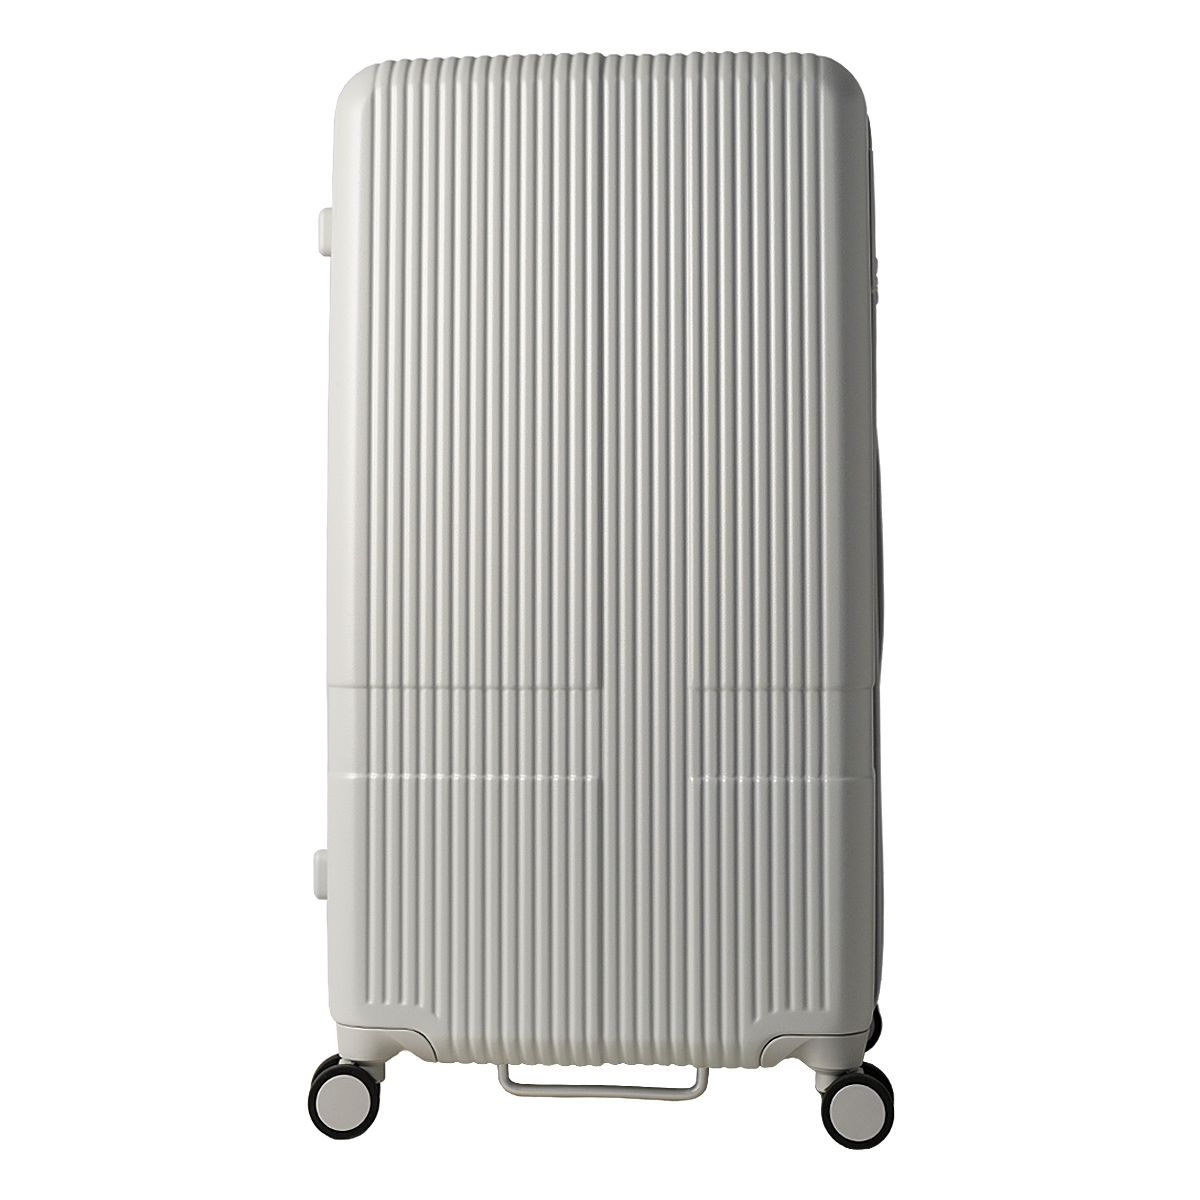 イノベーター スーツケース 2年保証 INV80 Lサイズ 92L innovator 